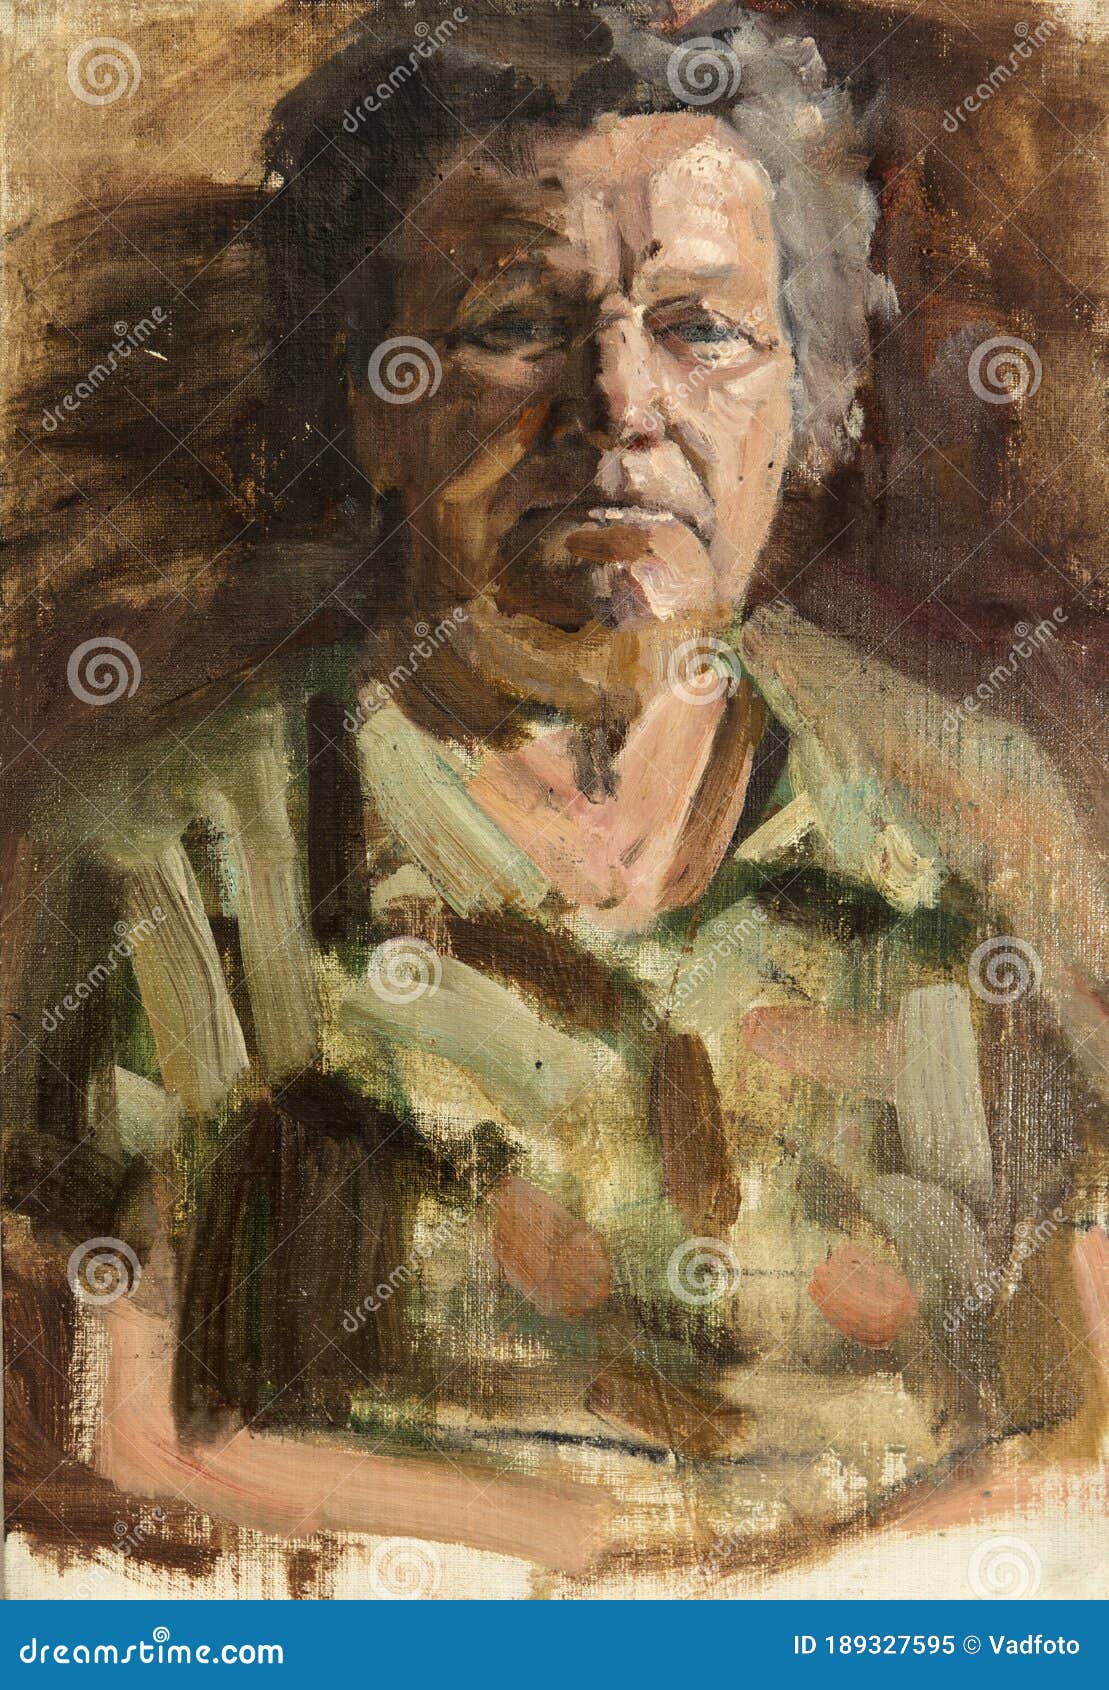 Retrato De Pintura Al óleo Dibujo Hecho a Mano Imagen de archivo - Imagen  de pelo, lona: 189327595